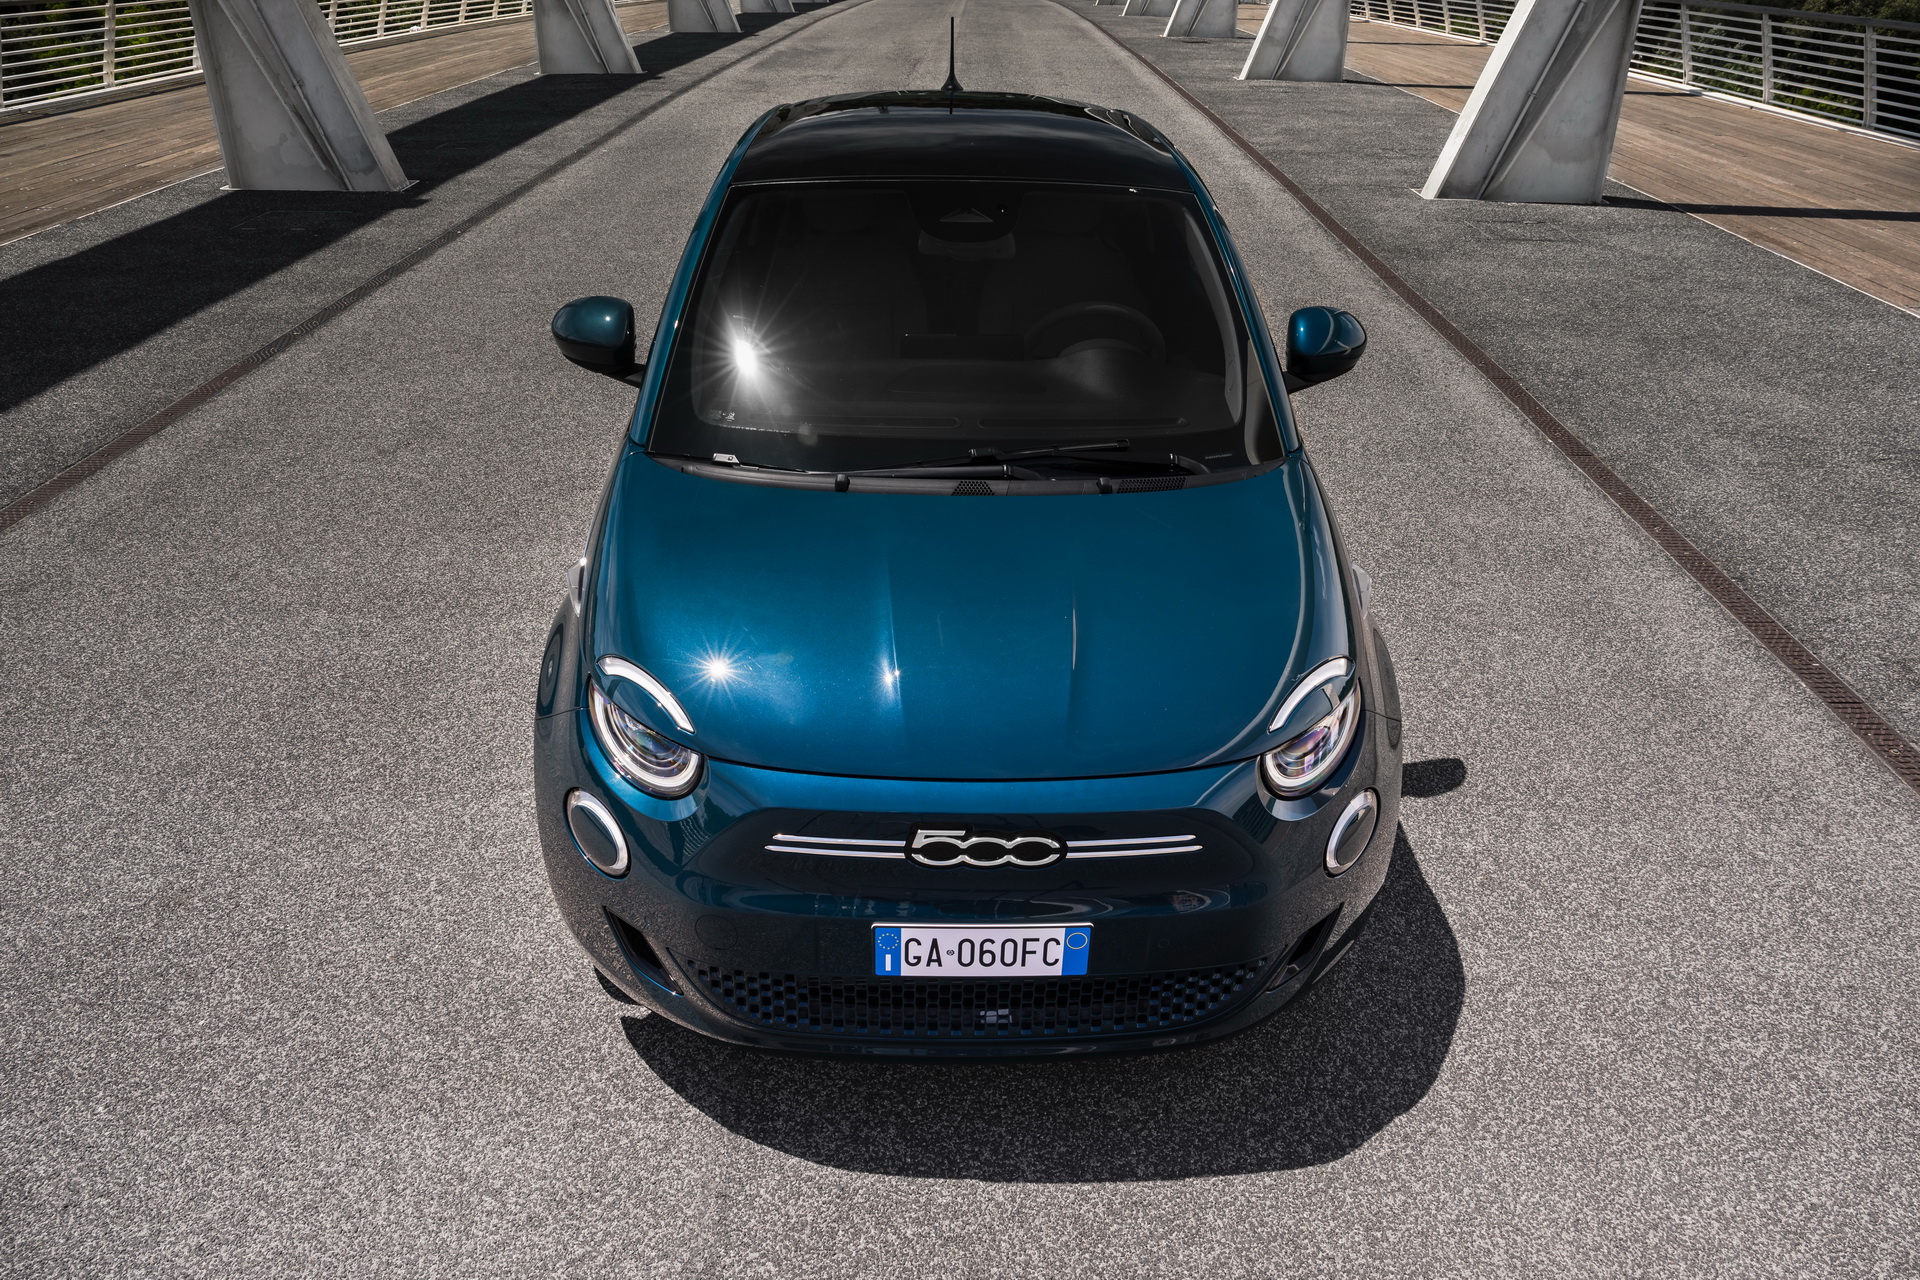 Fiat Novo 500 2020